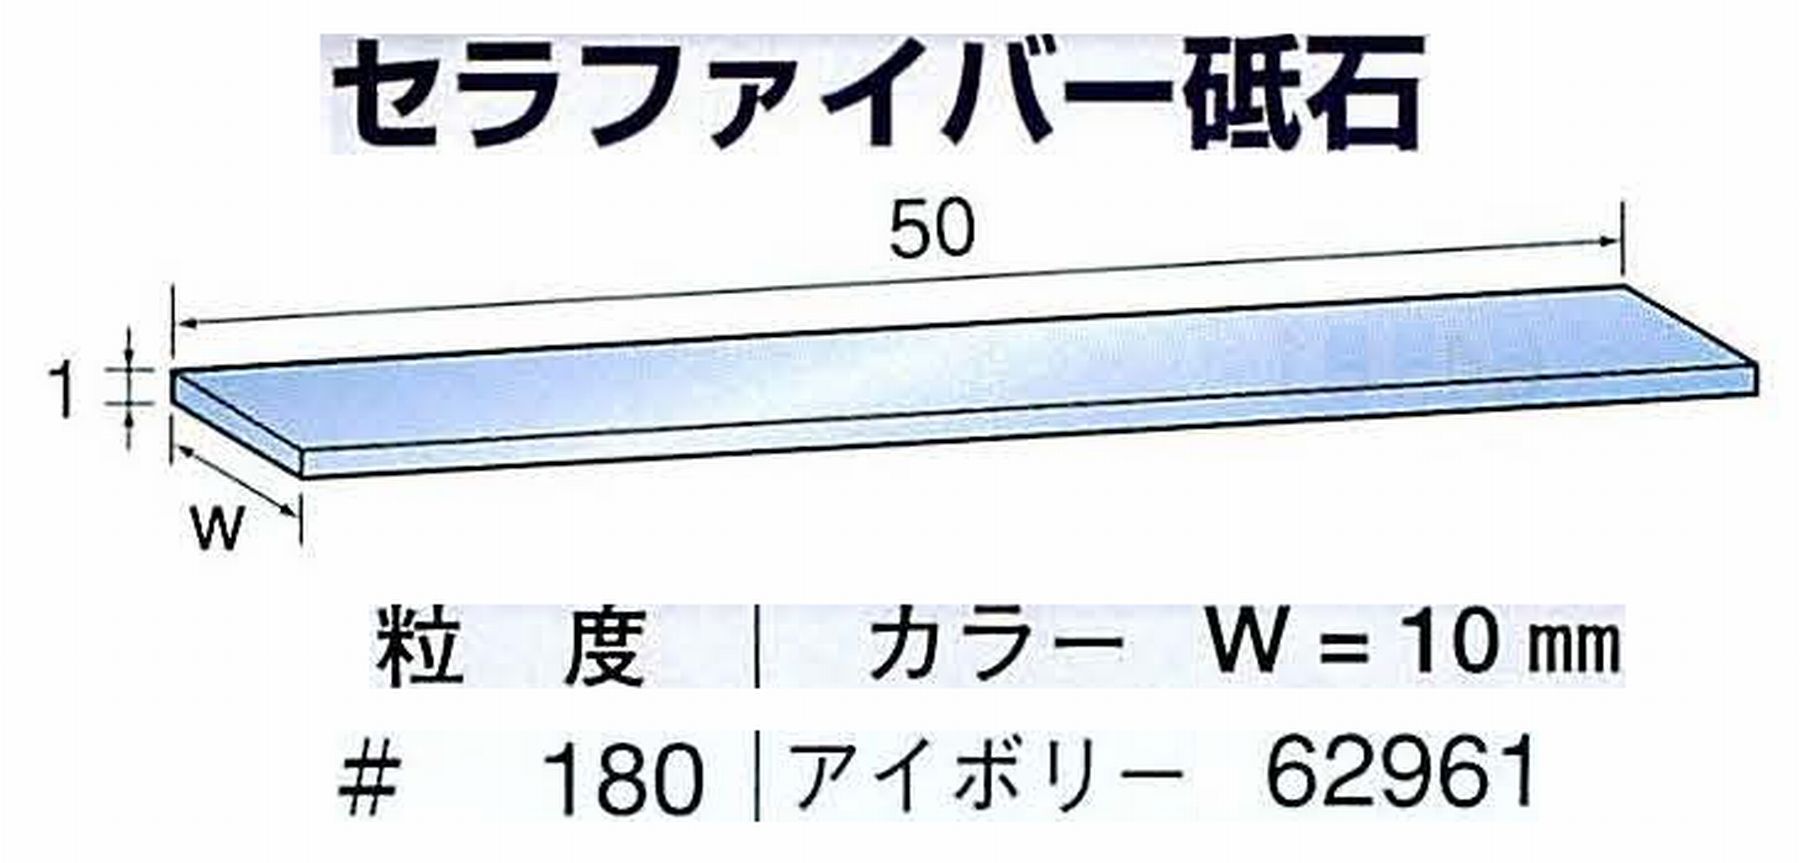 ナカニシ/NAKANISHI ペンシルタイプ 電動・エアーヤスリ(左右動) スイングラスター専用工具 セラファイバー砥石 62961